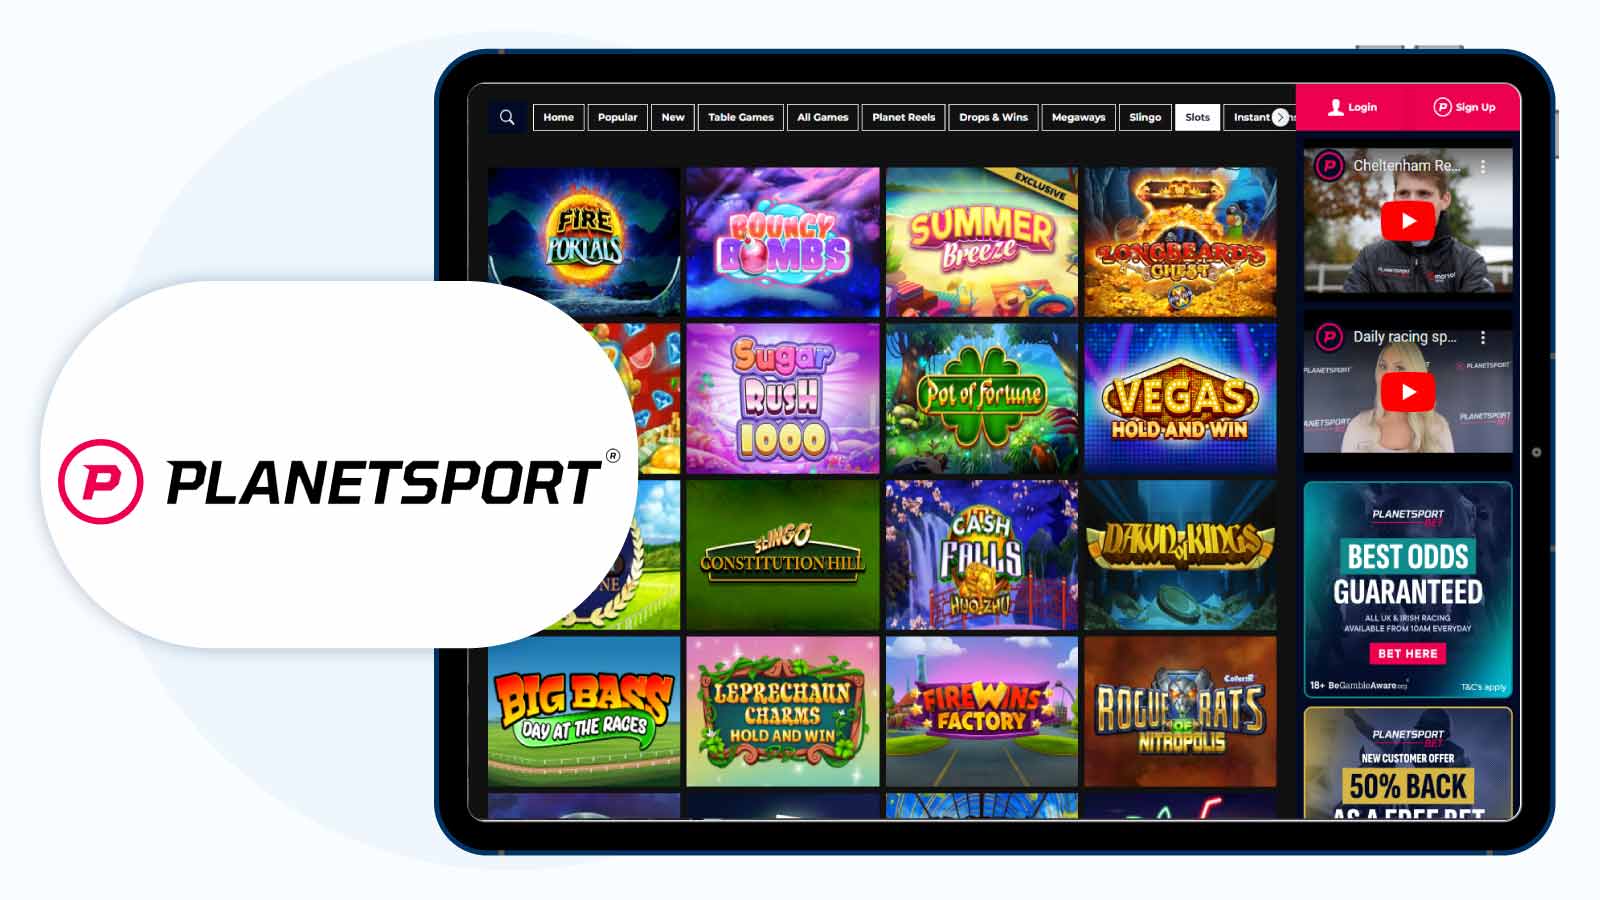 #3. Planet Sport Bet – Best Slot Bonus UK for Starburst